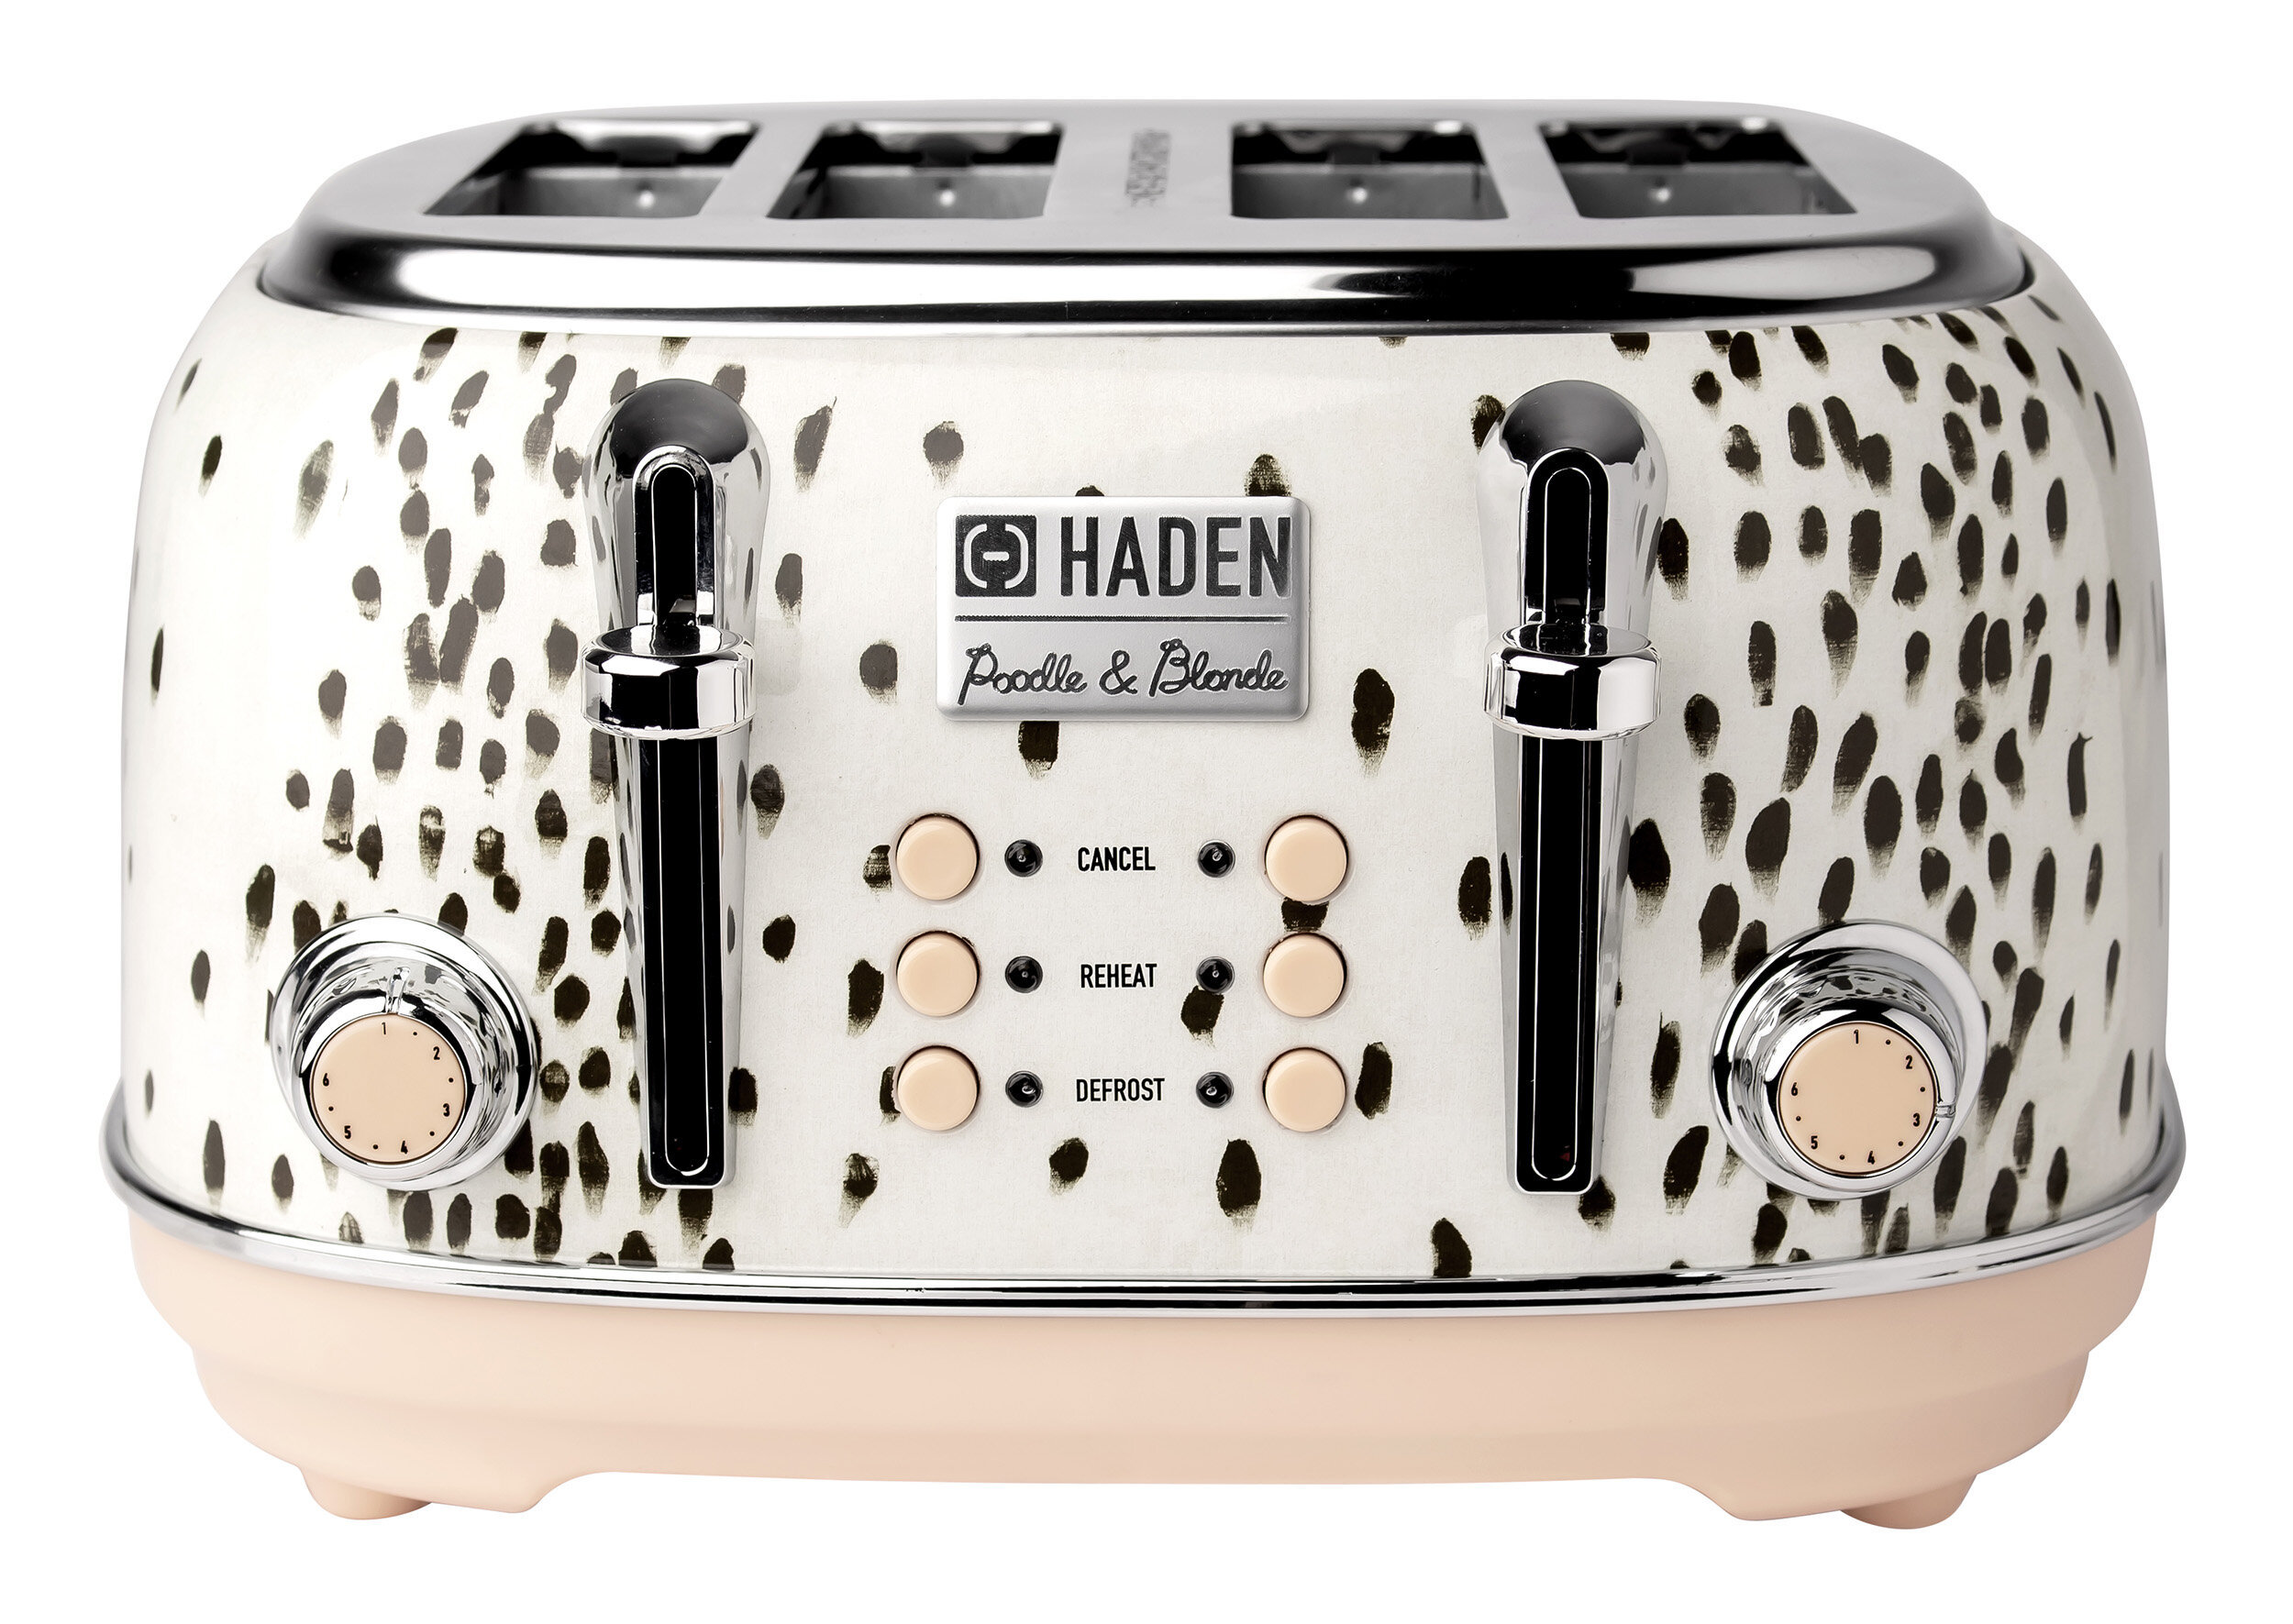 https://assets.wfcdn.com/im/91157670/compr-r85/1246/124669084/haden-poodle-blonde-4-slice-wide-slot-toaster.jpg